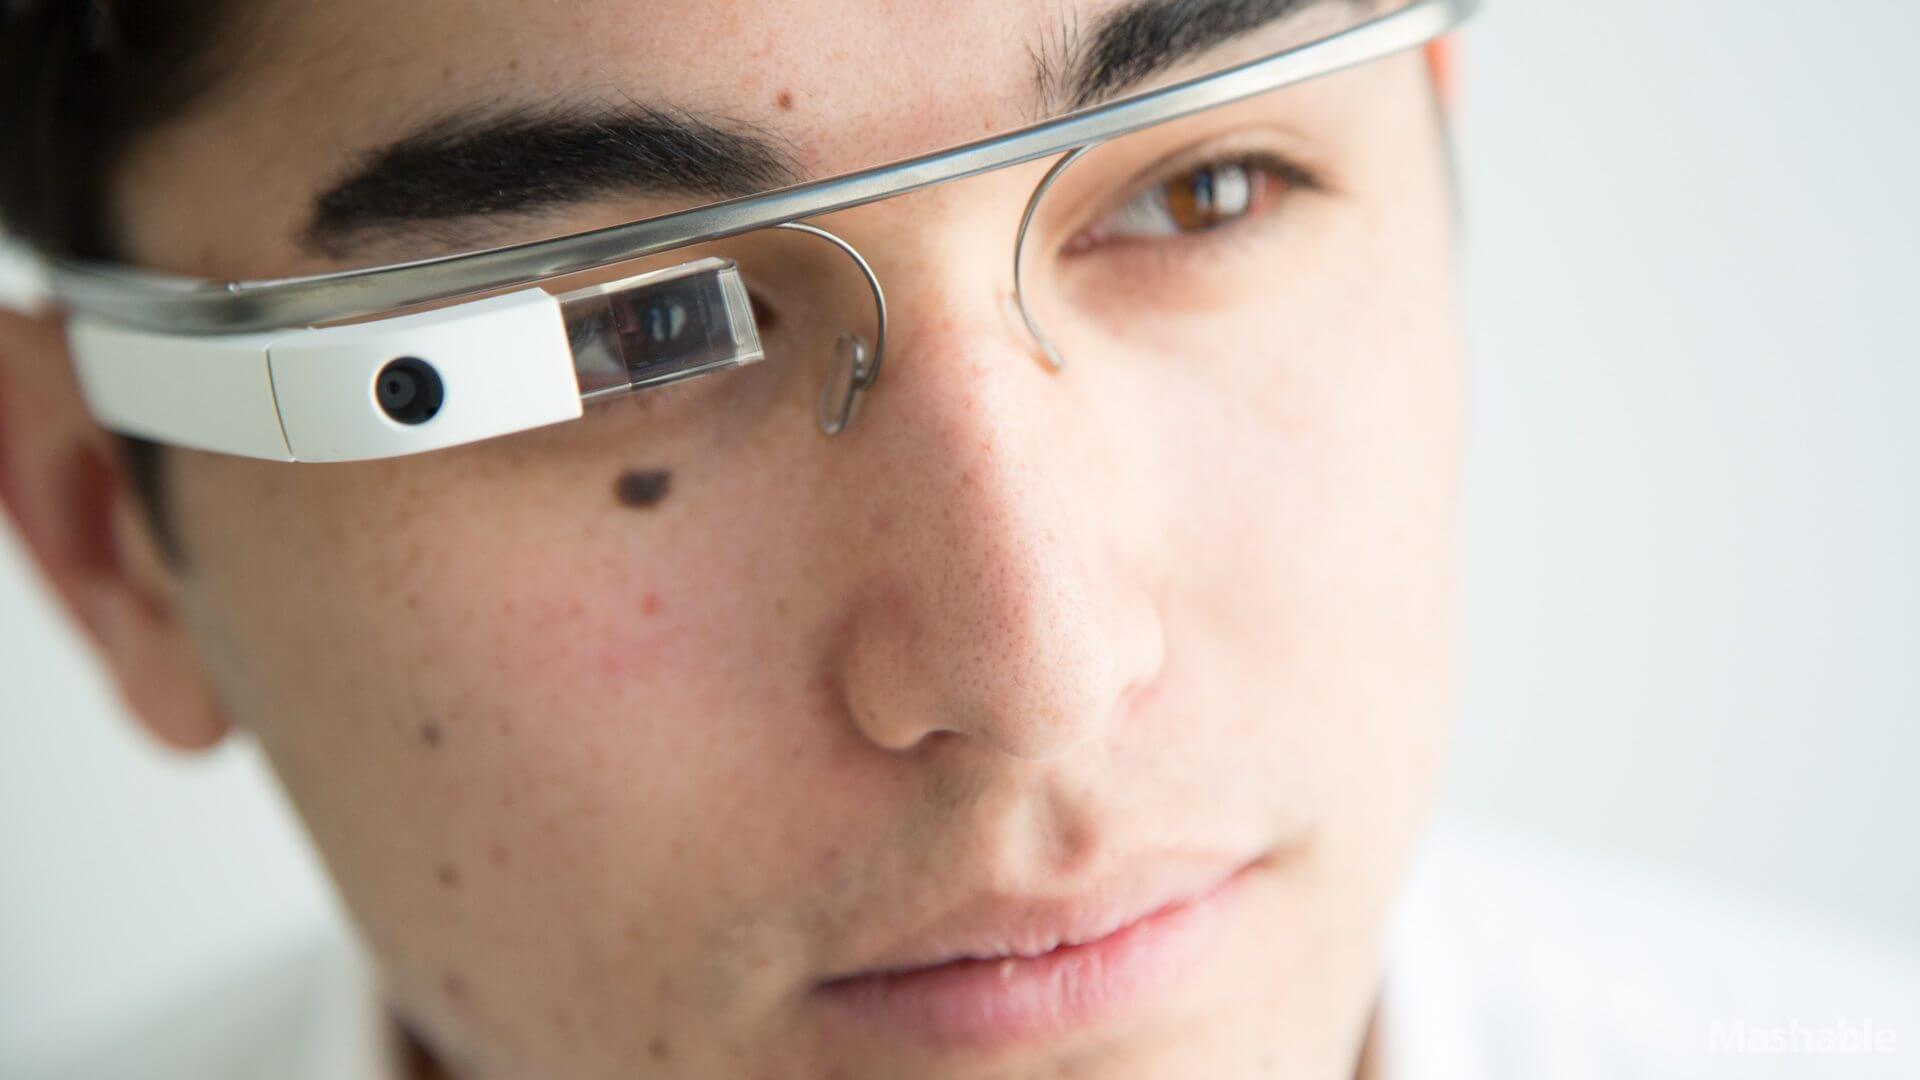 A busca por um óculos de realidade aumentada. A realidade aumentada é o futuro da tecnologia, mas o quão próximo dela nós realmente estamos?